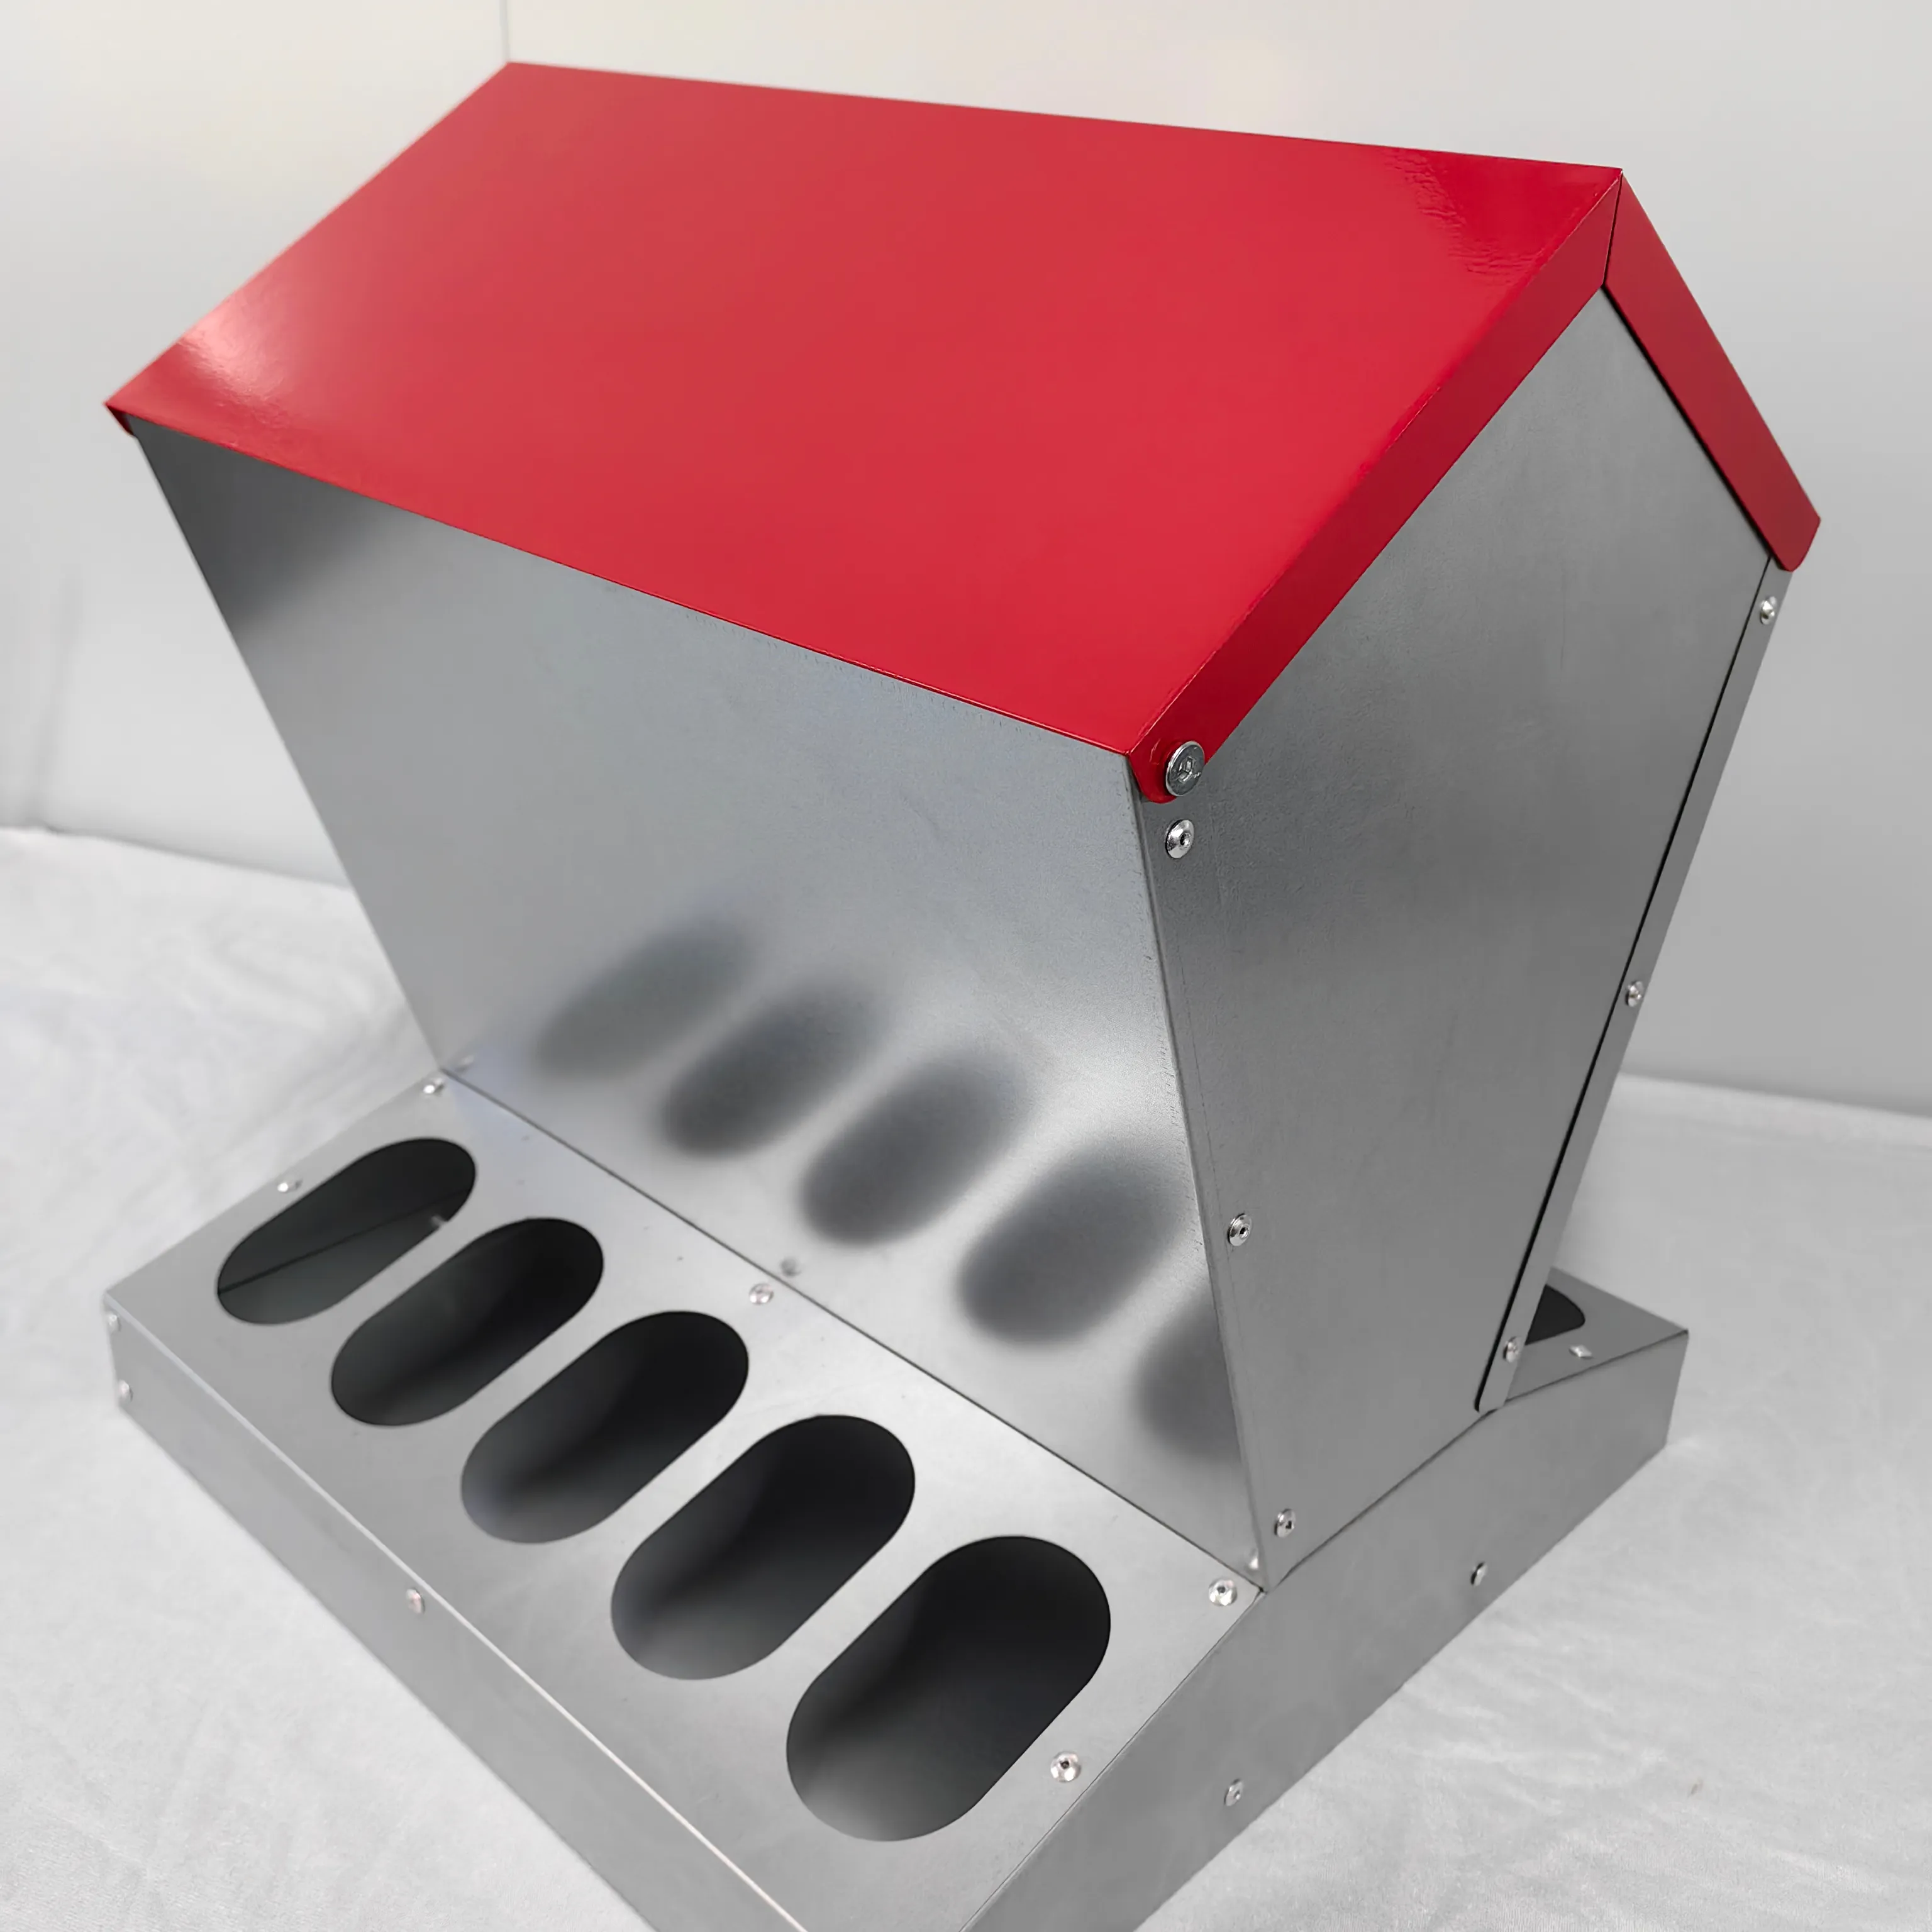 Equipamento alimentação frango Sistema alimentação automática Feede frango galvanizado pintado